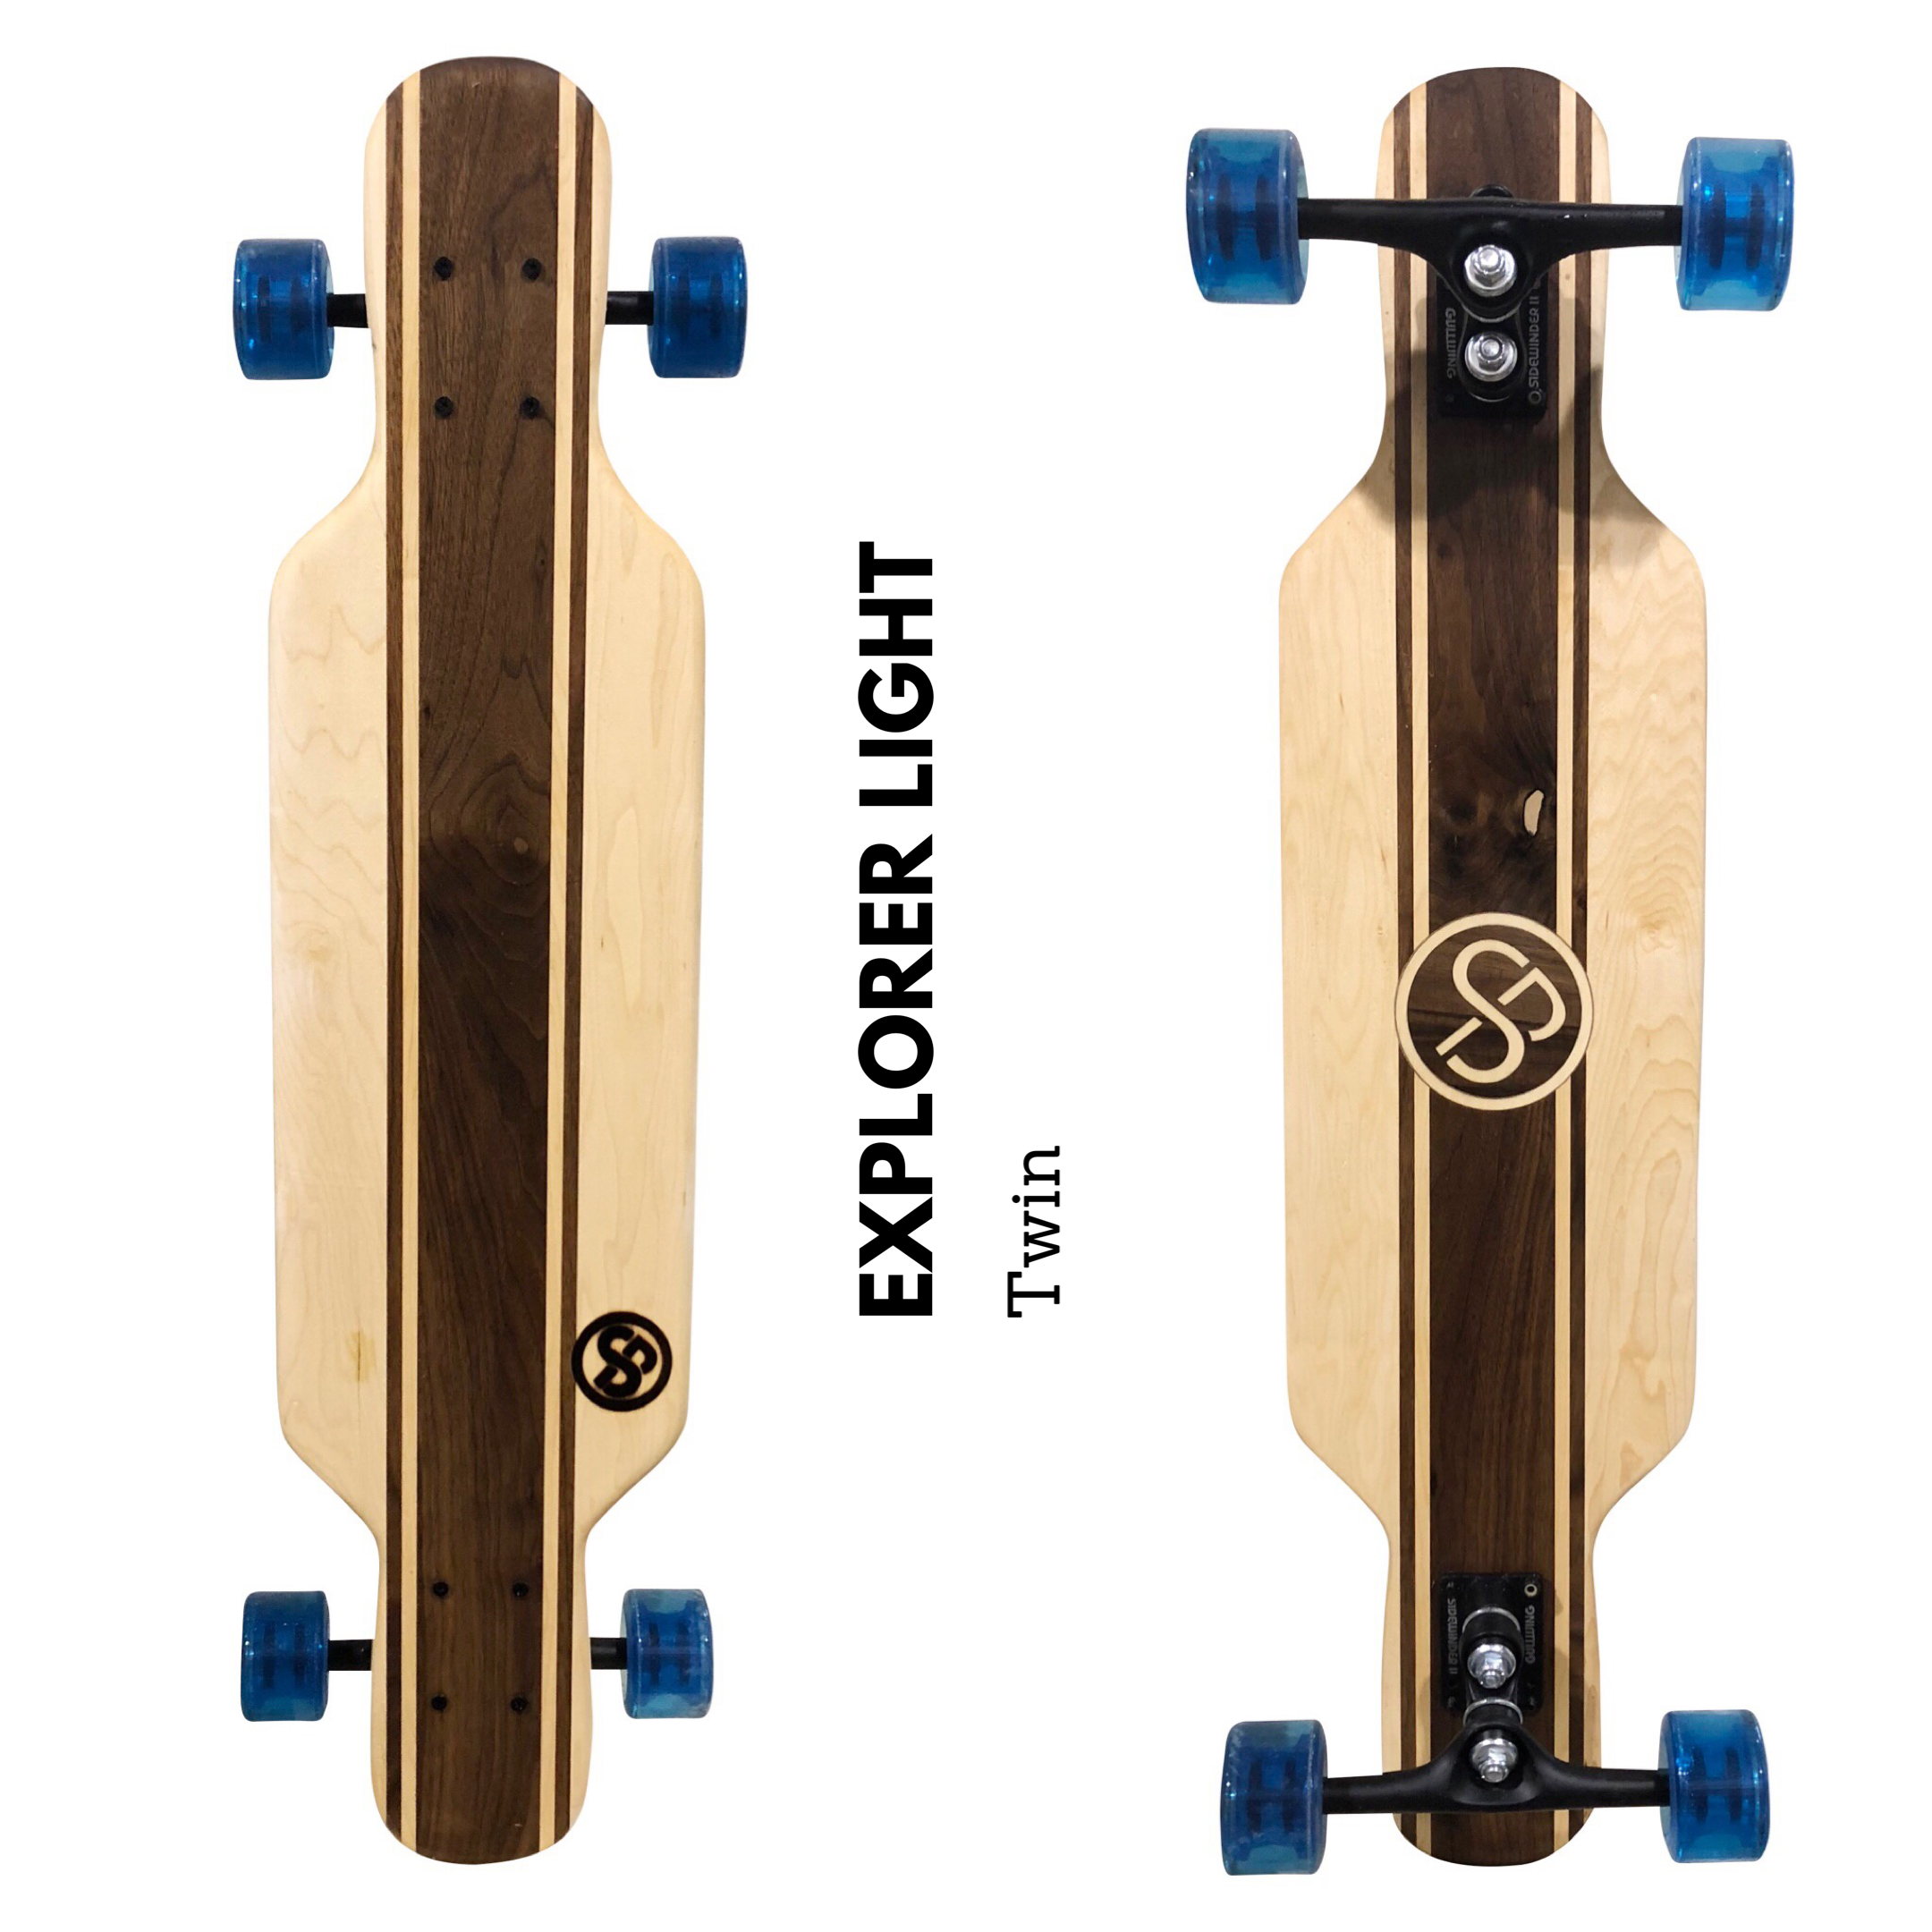 Flash Skateboard Komplett Board 80x20 cm Holzboard Kickboard Funboard Longboard 